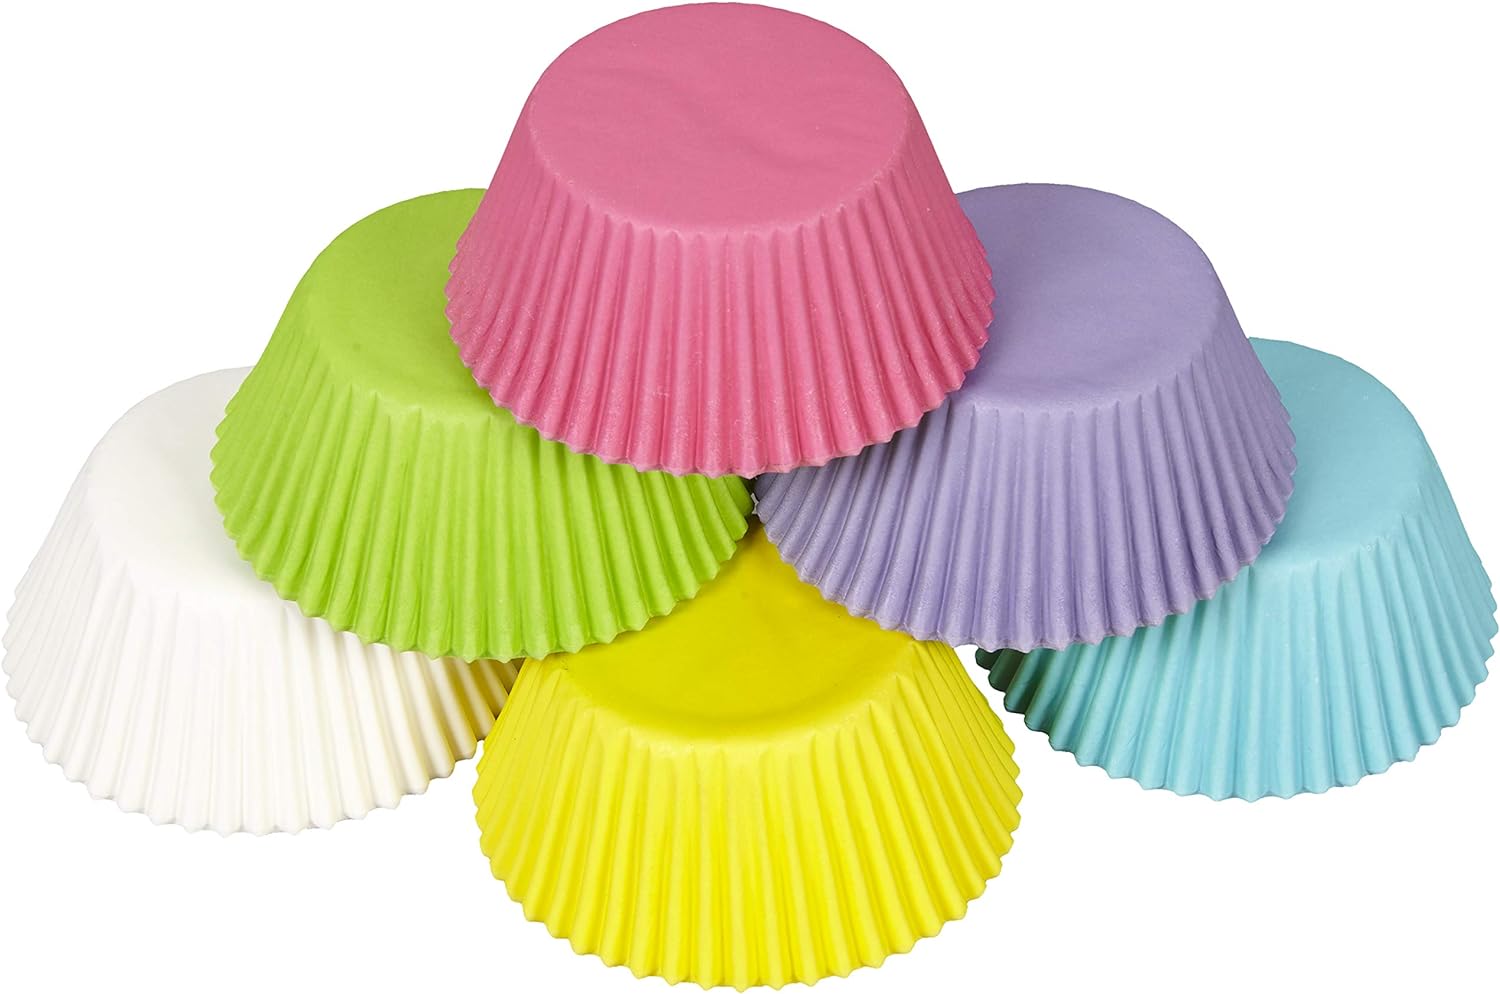 Wilton Bakecups, Multicolor